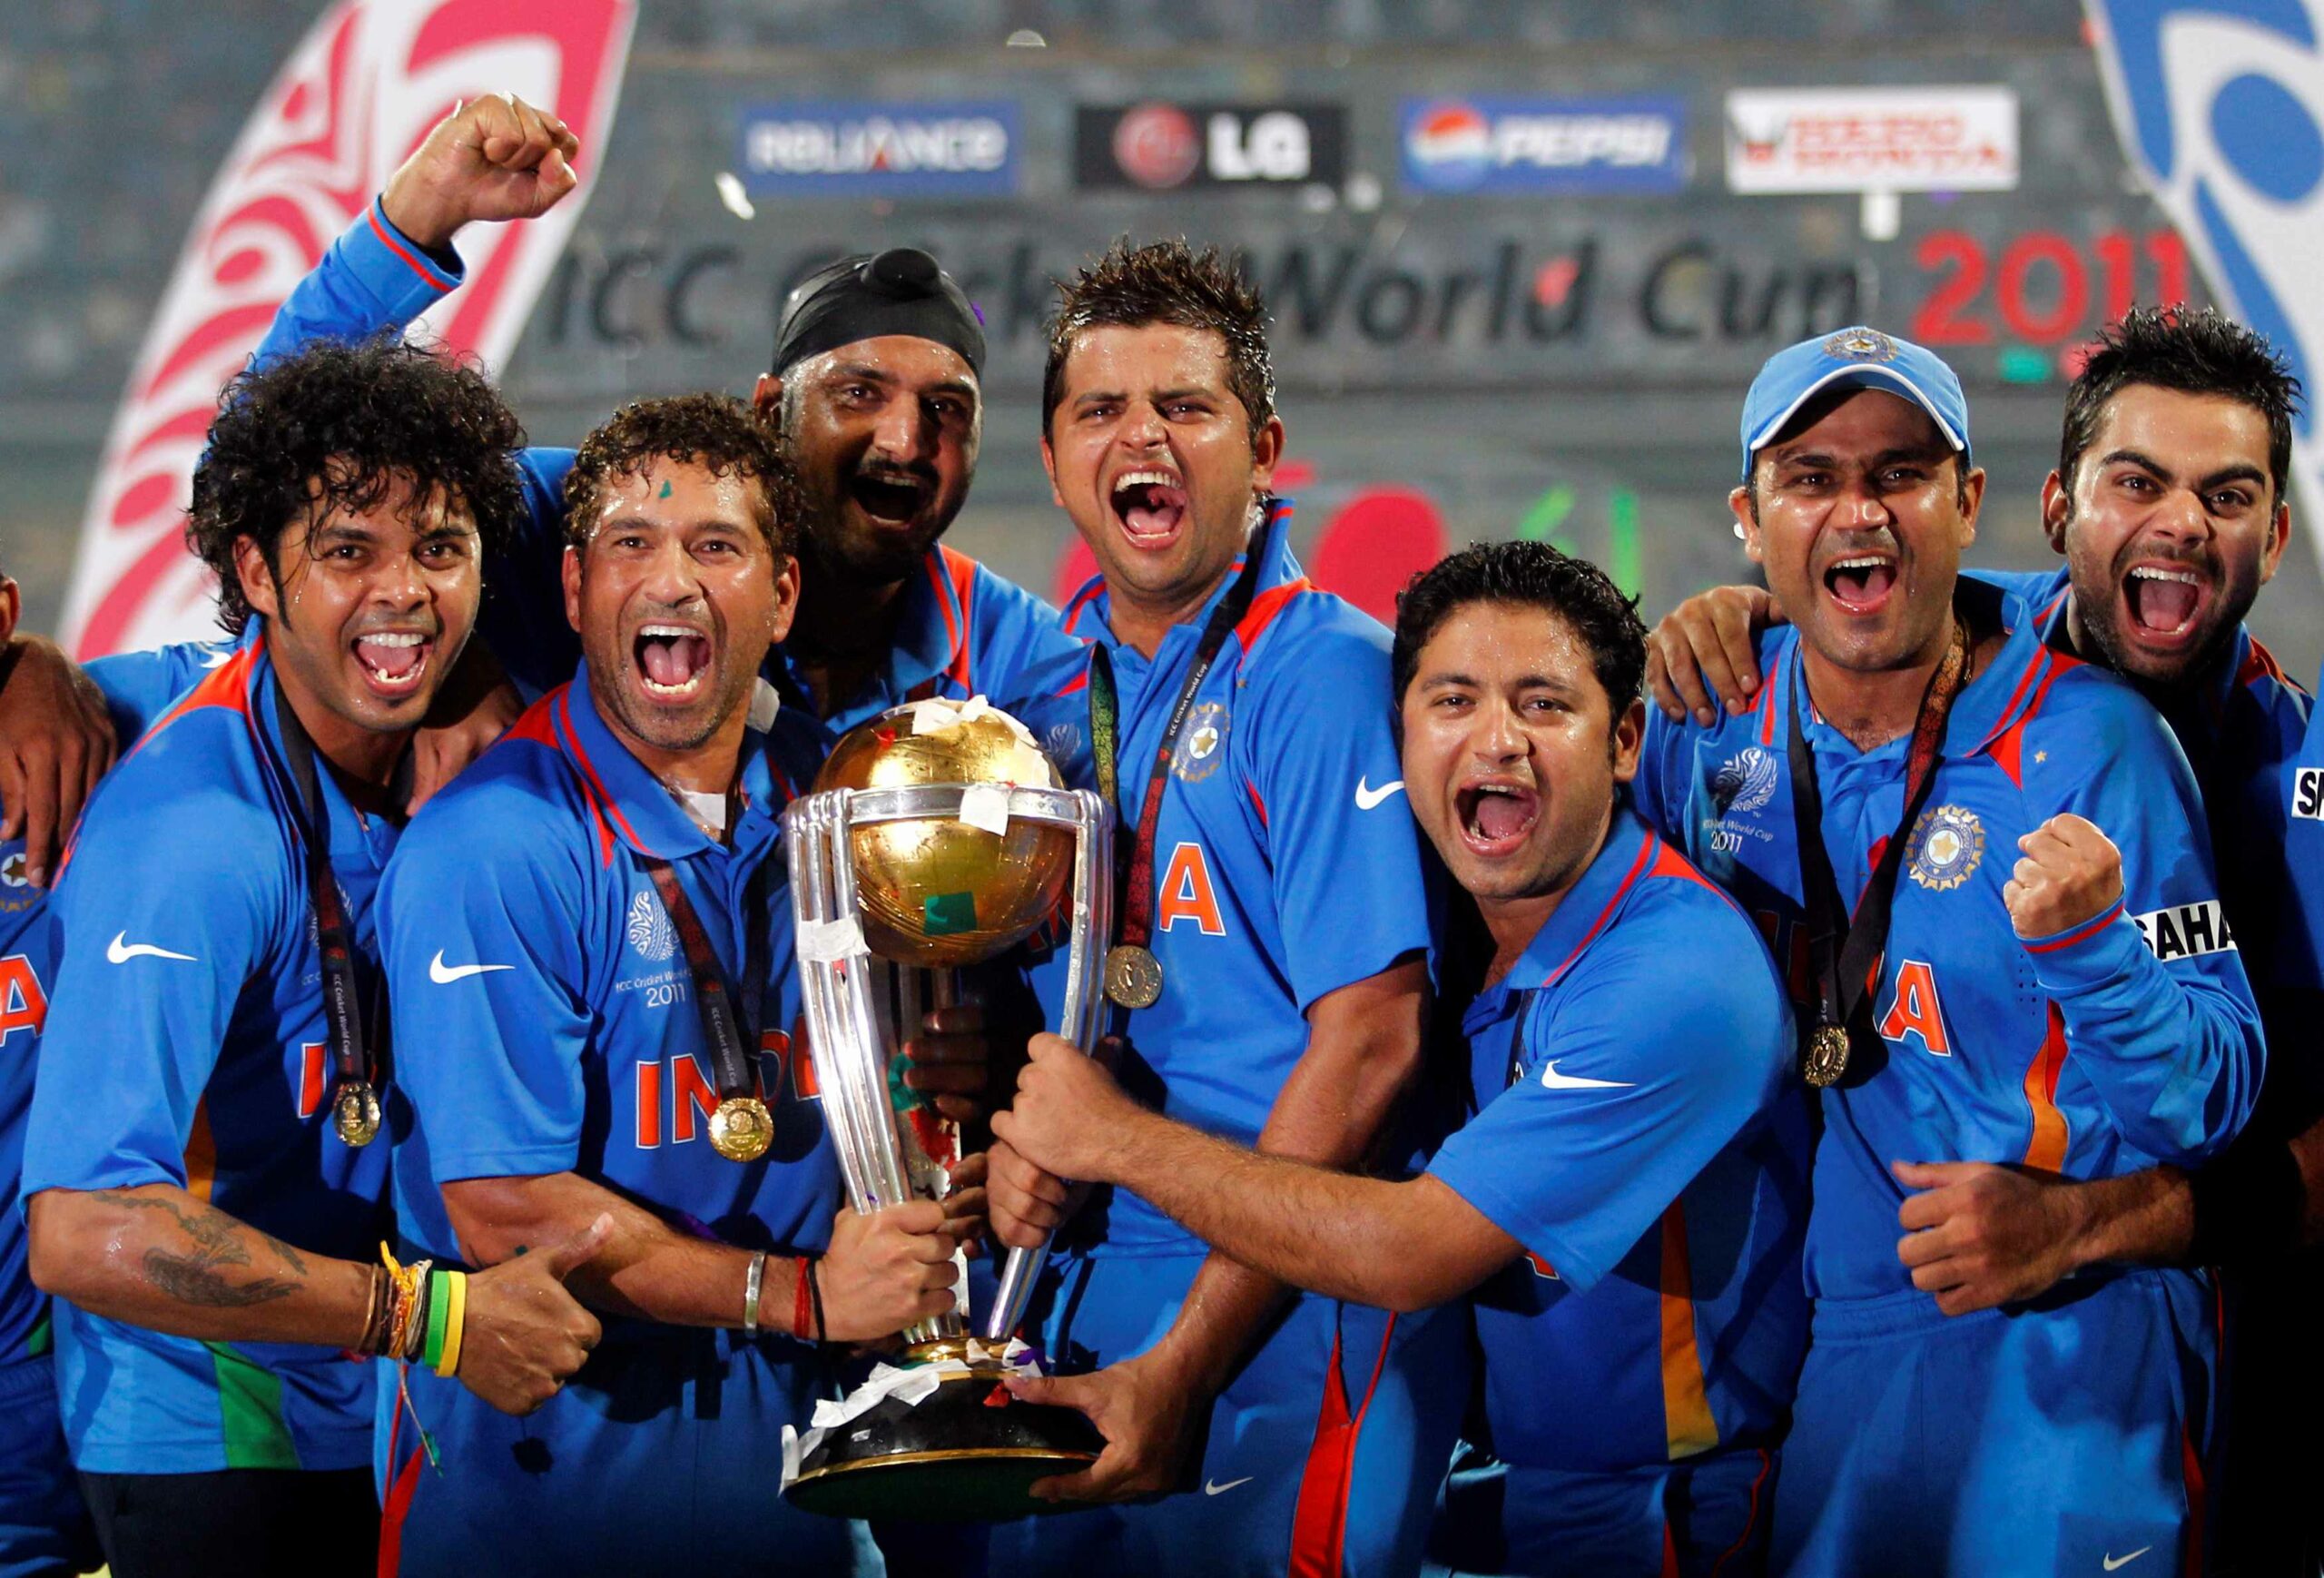 5 भारतीय खिलाड़ी जिन्हे अंडर 19 में नहीं मिली जगह, लेकिन इंटरनेशनल क्रिकेट में बिखेरा अपना जलवा